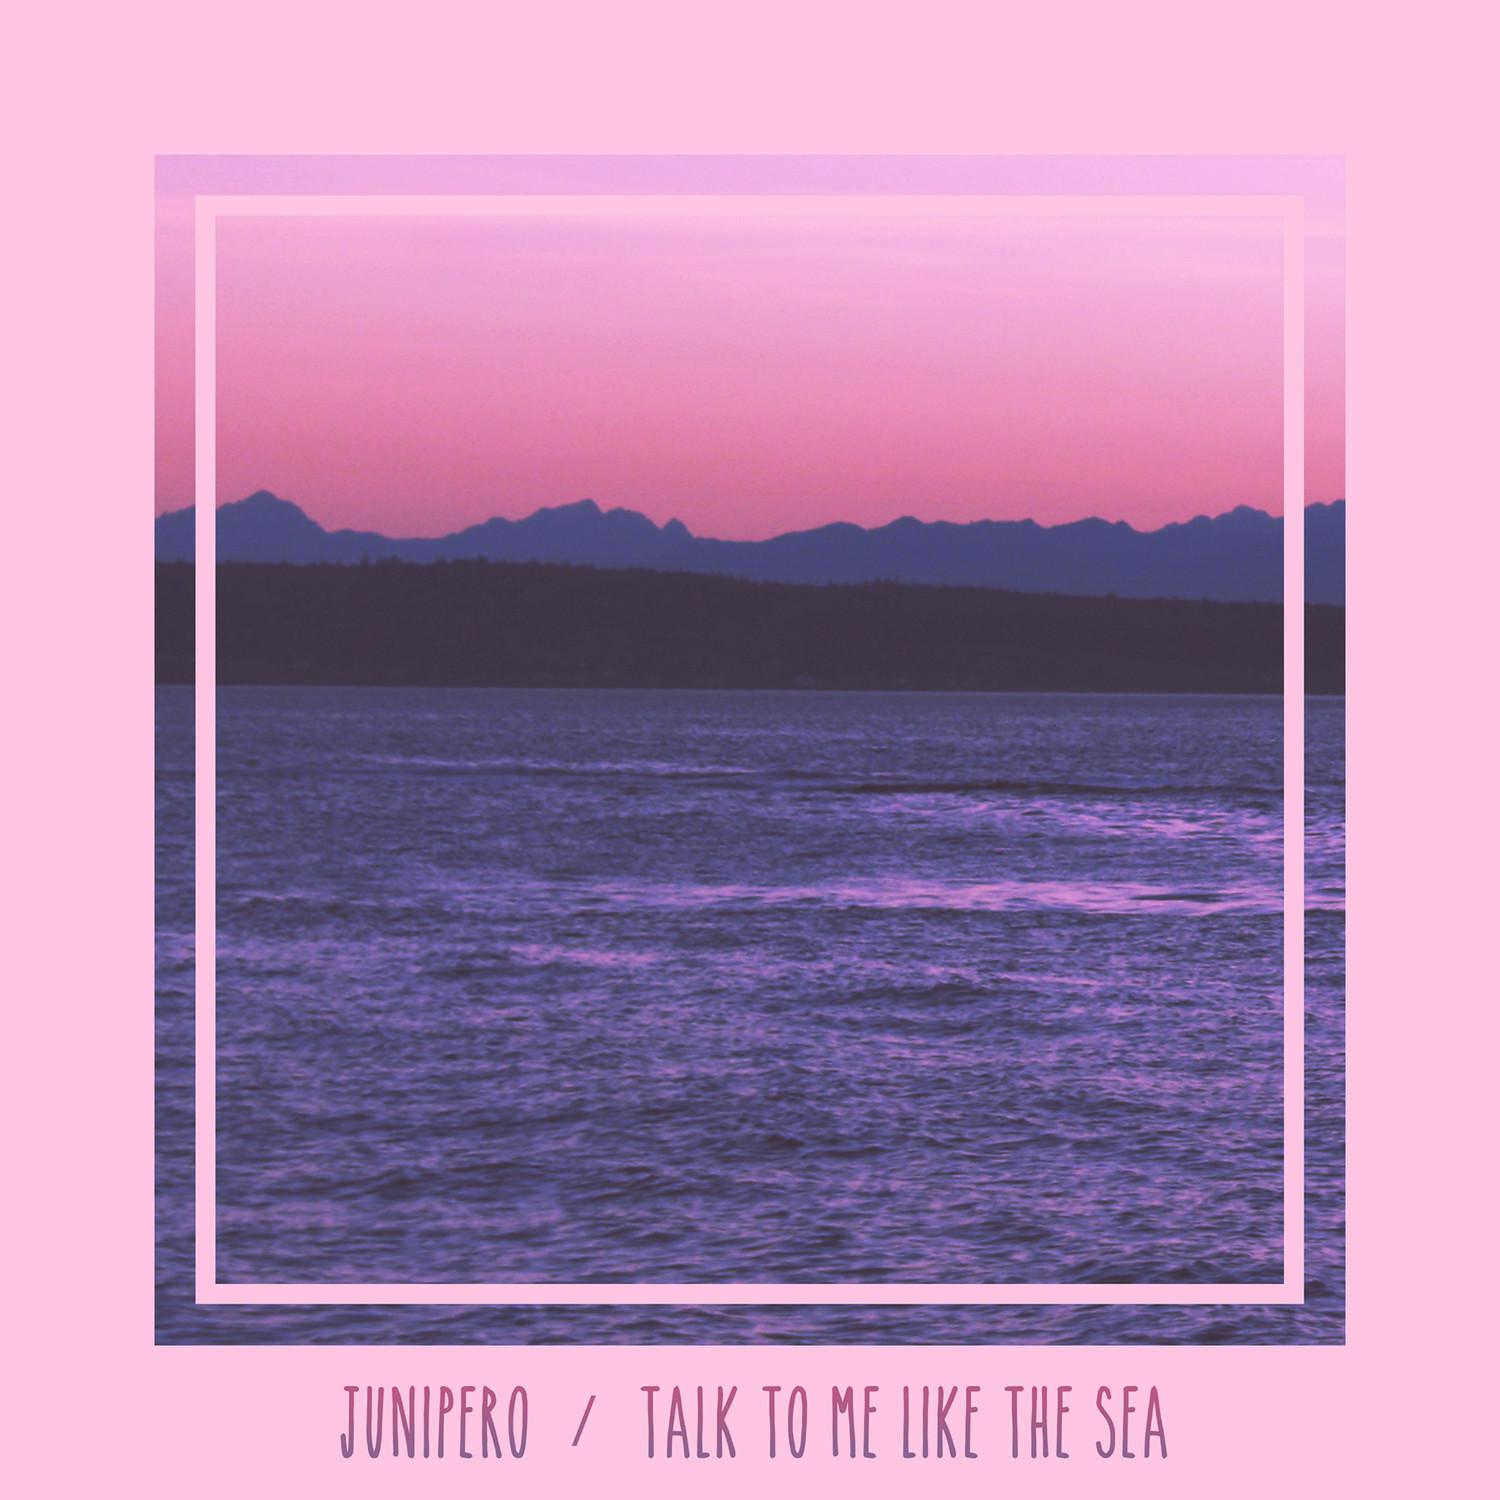 Talk to Me Like the Sea